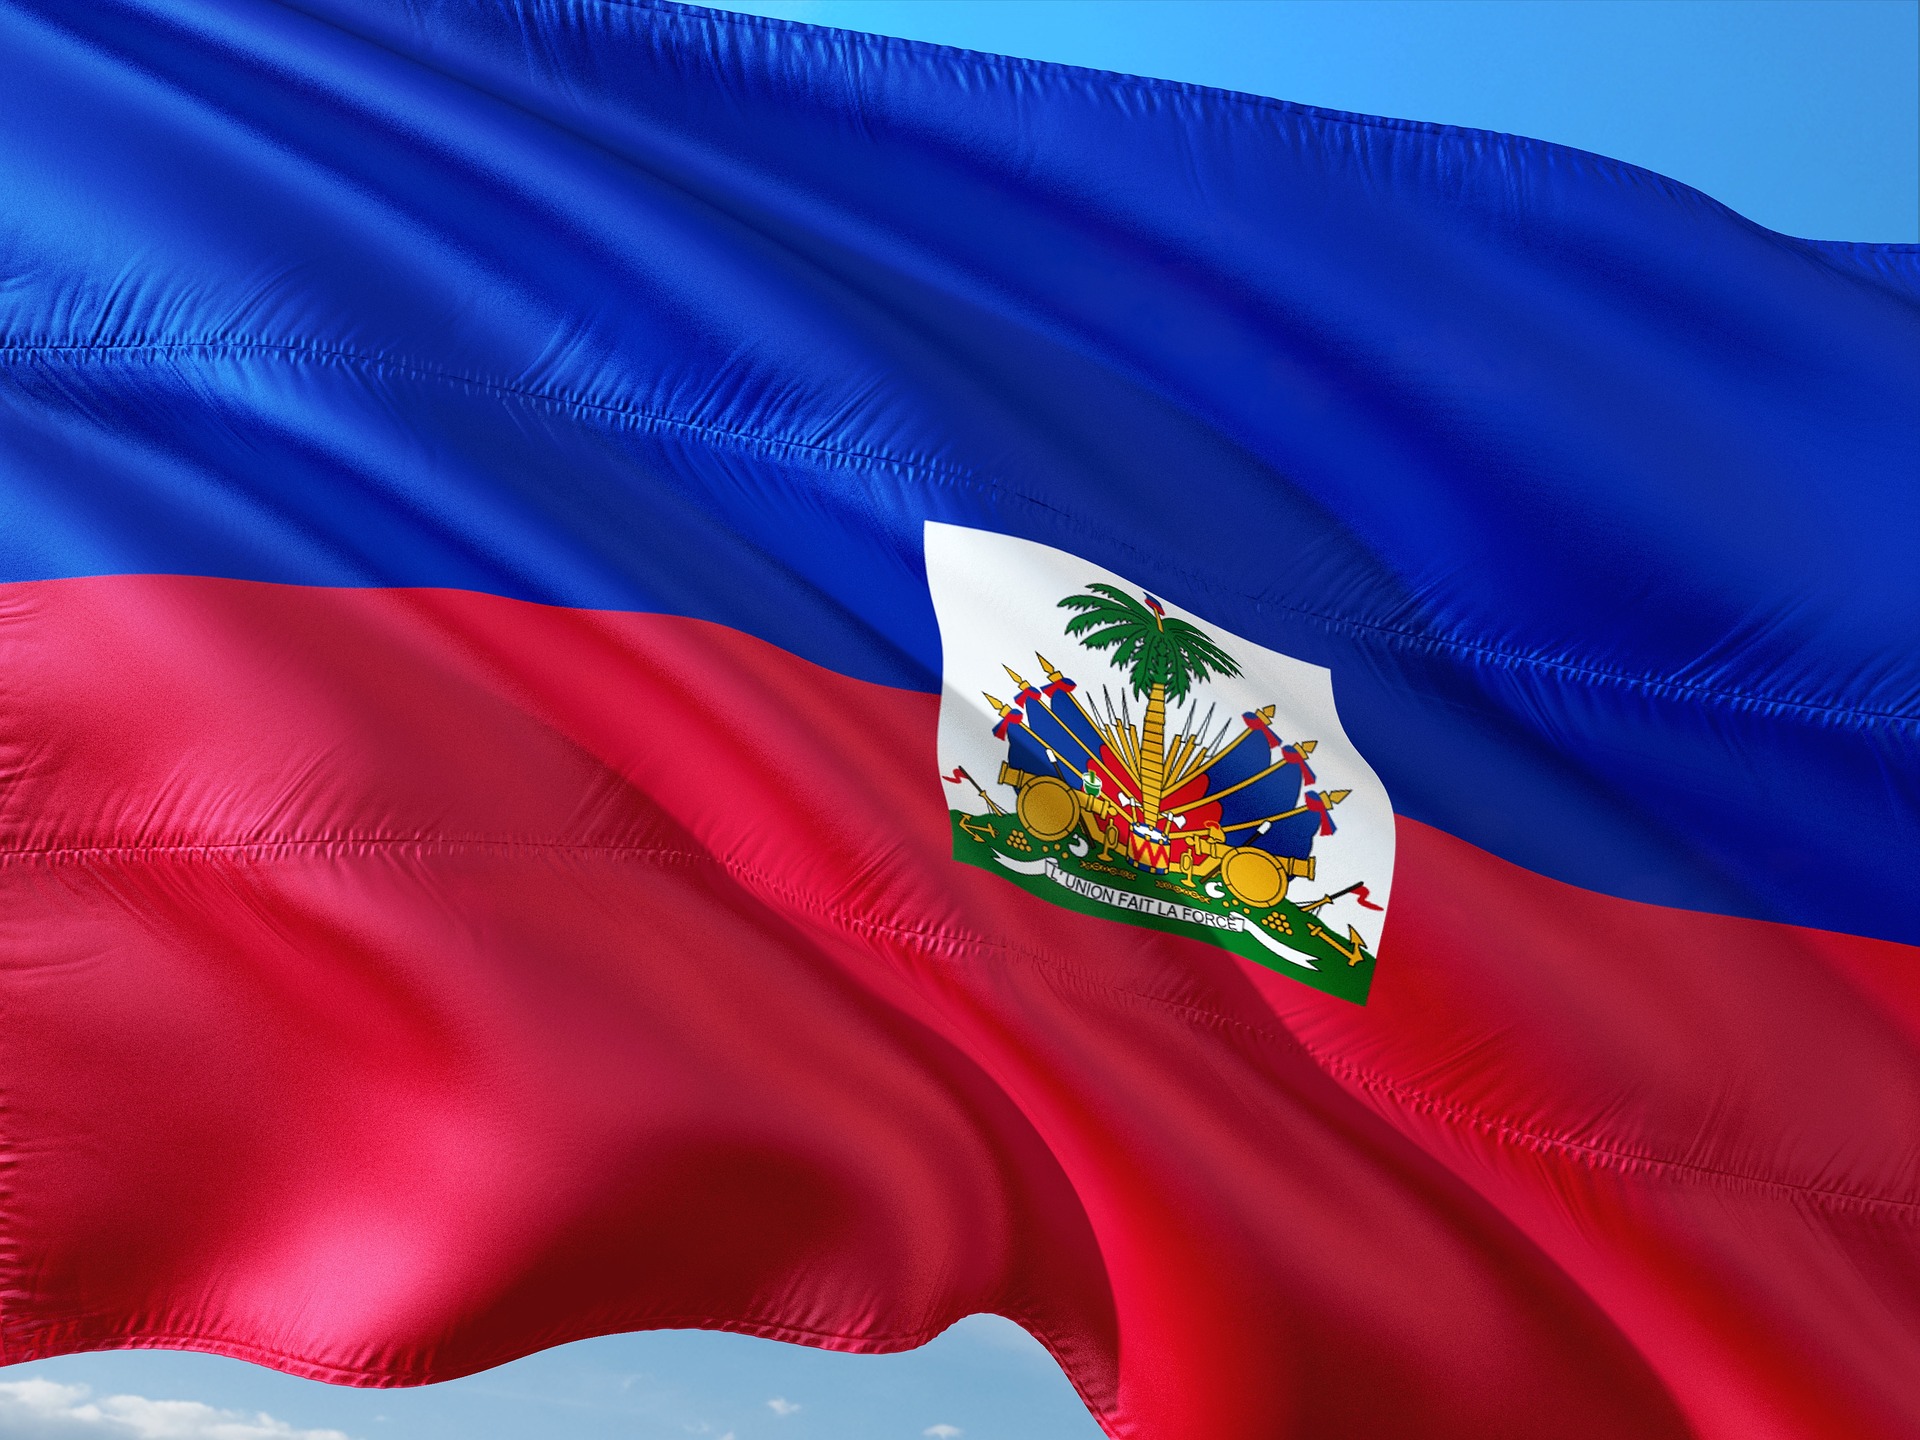 U.S. Under Pressure to Change Policies Toward Haiti